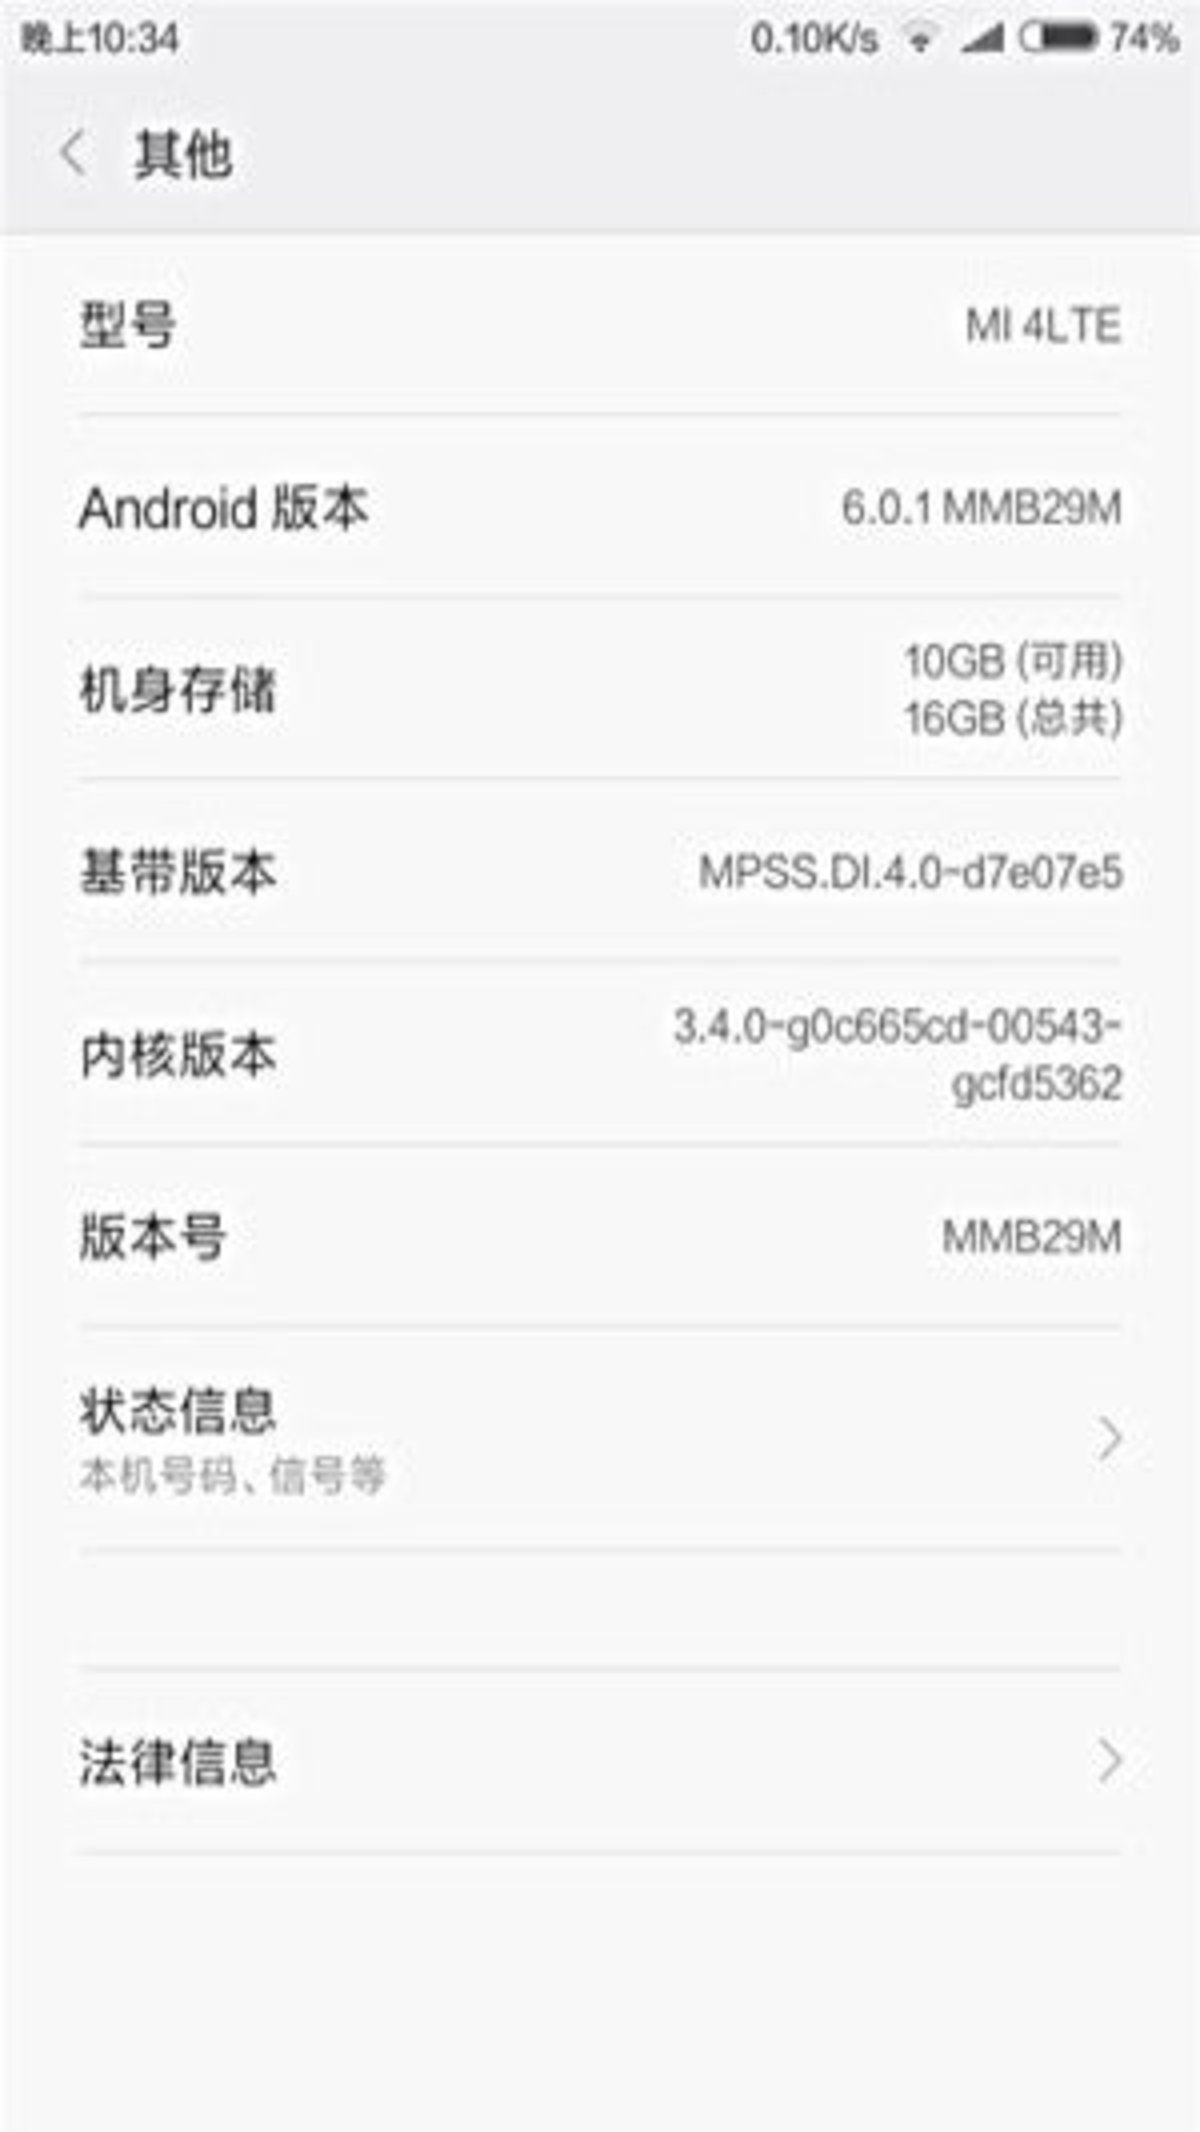 MIUI 7 con Android 6.0